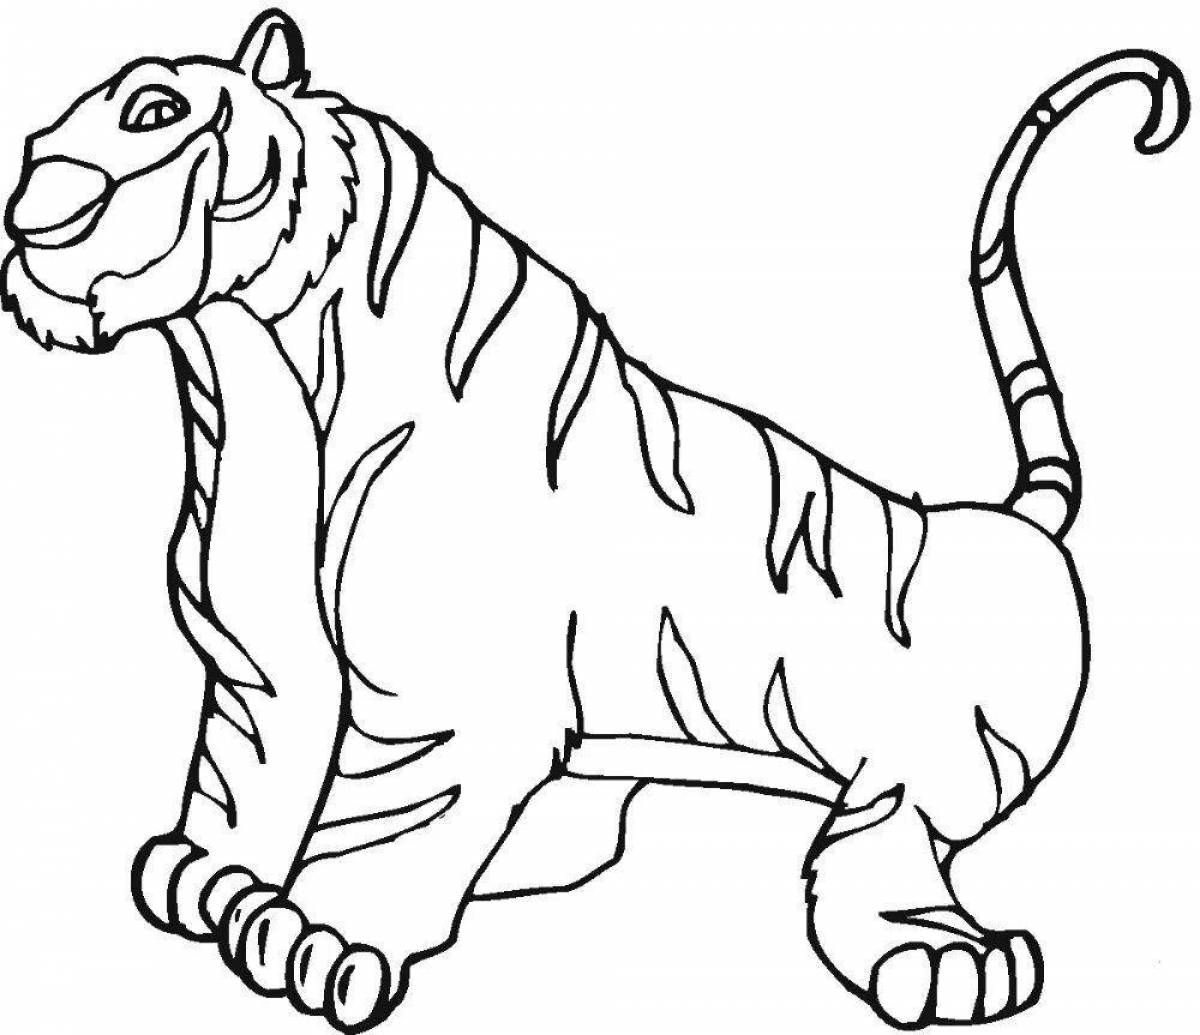 Анимированная страница раскраски тигрового окраса